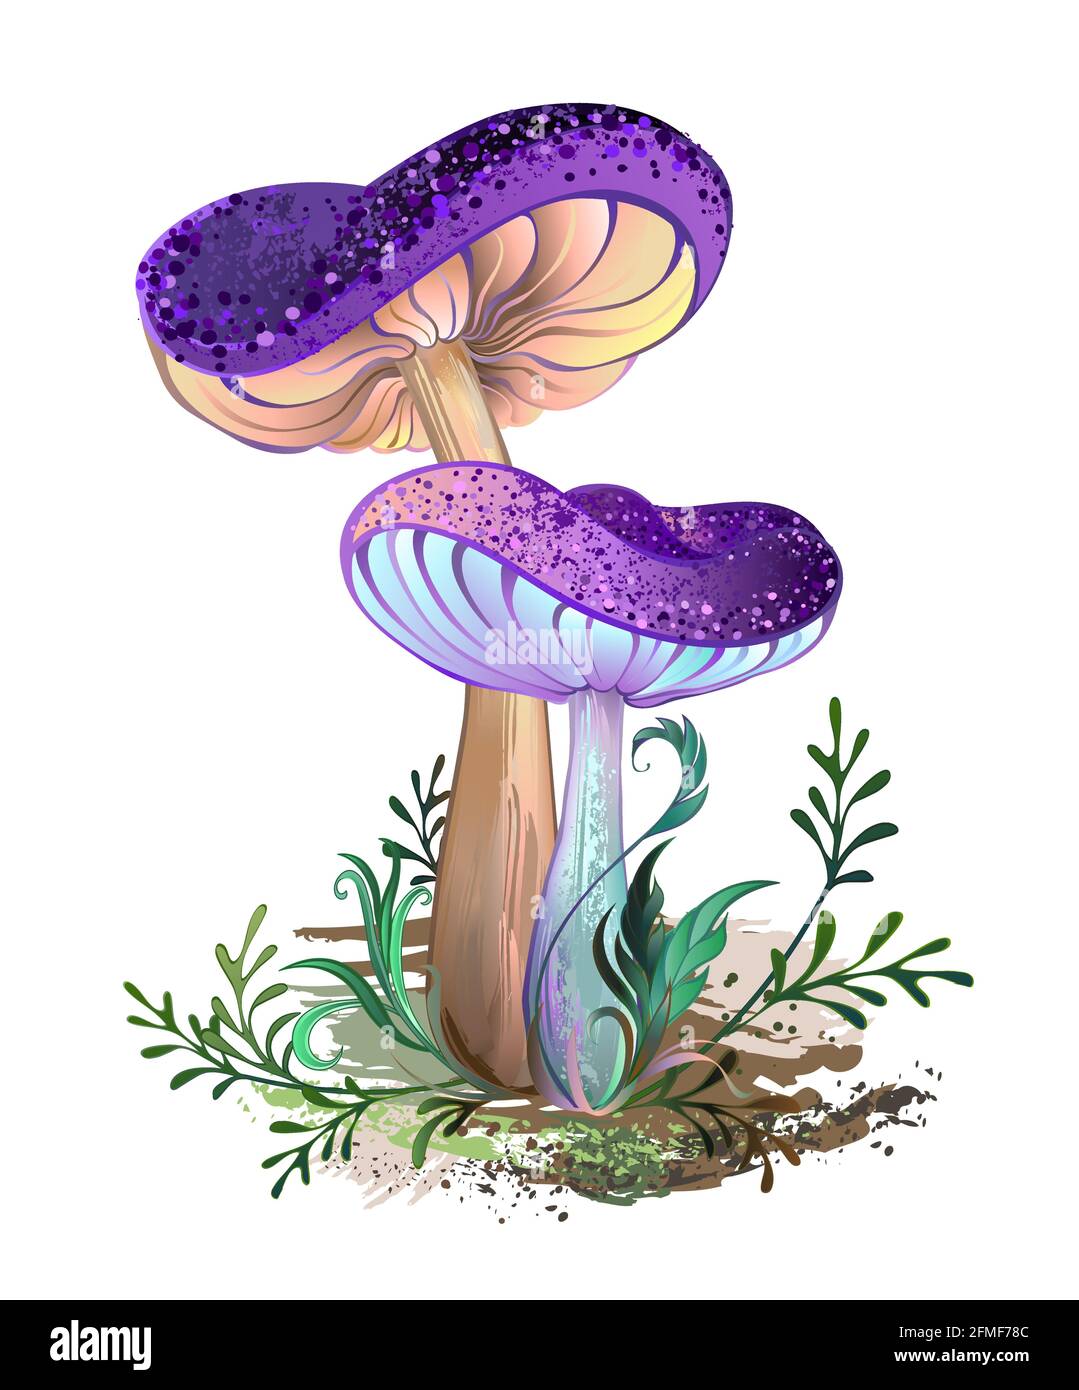 Zwei künstlerisch gezeichnete, realistische, reife Pilze mit purpurroten Strukturkappen mit grünem Moos auf weißem Hintergrund. Fabelhafte Pilze. Stock Vektor